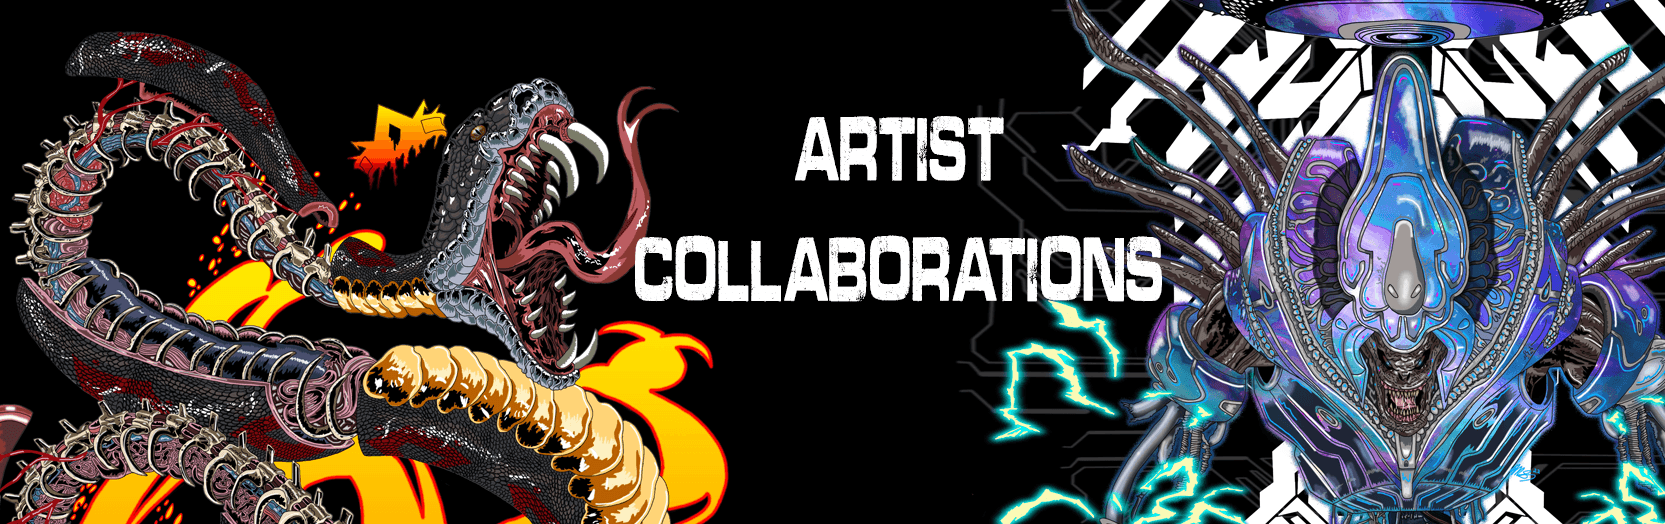 Artist Collaboration - Scott Atomic™ merchandise